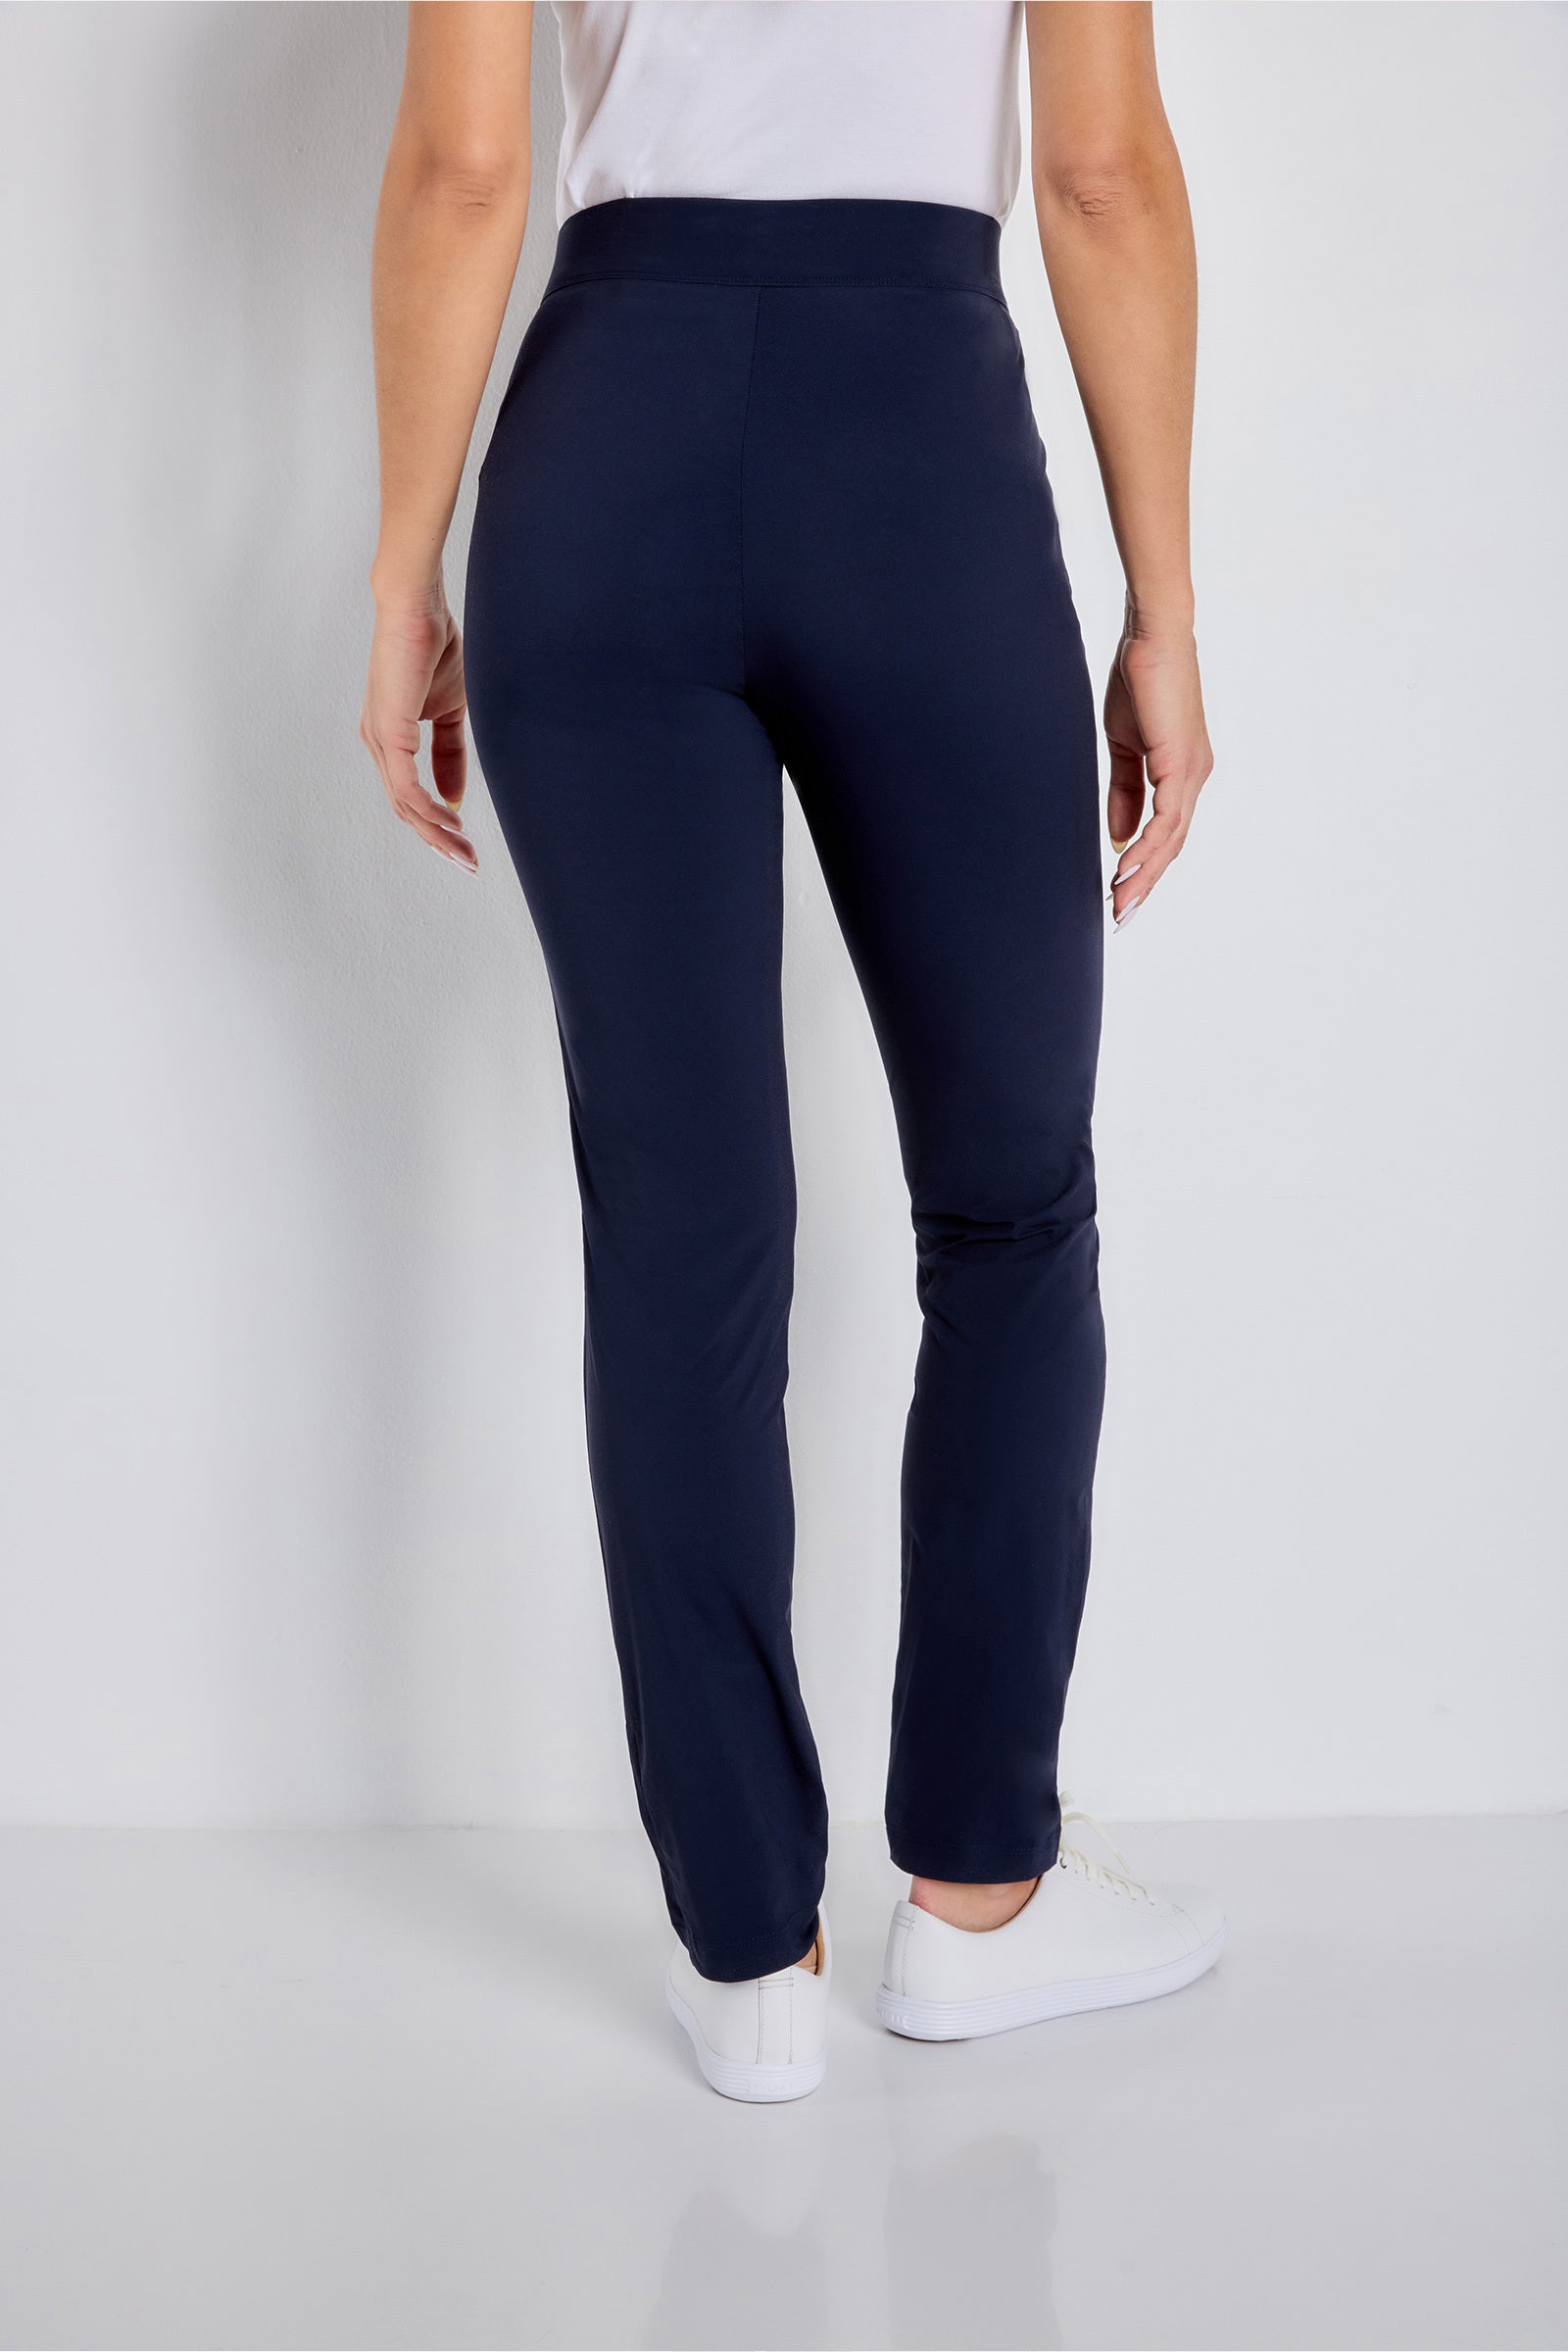 Buy Beige Trousers  Pants for Women by Lee Online  Ajiocom